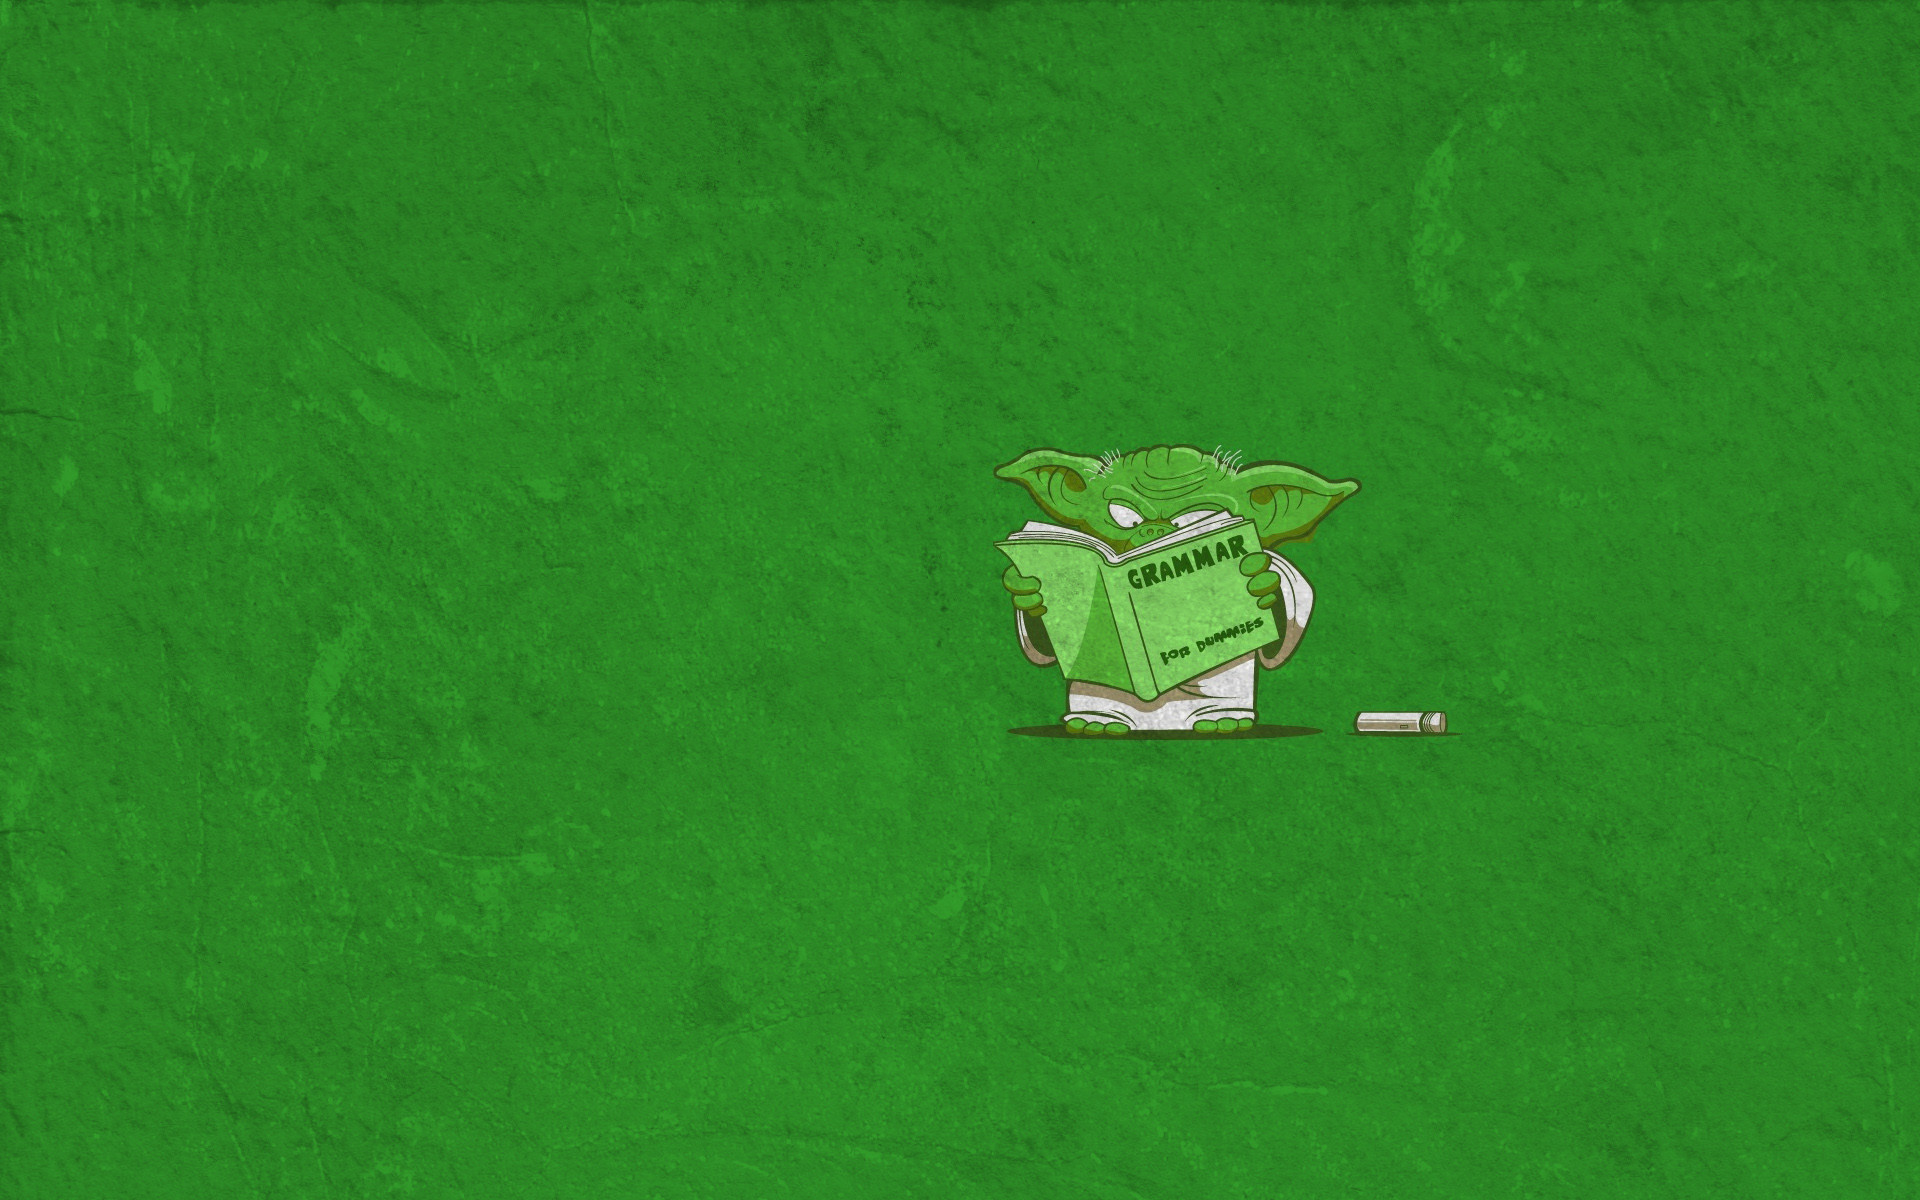 1920x1200 wallpaper green Â· Star Wars Â· minimalistic Â· funny